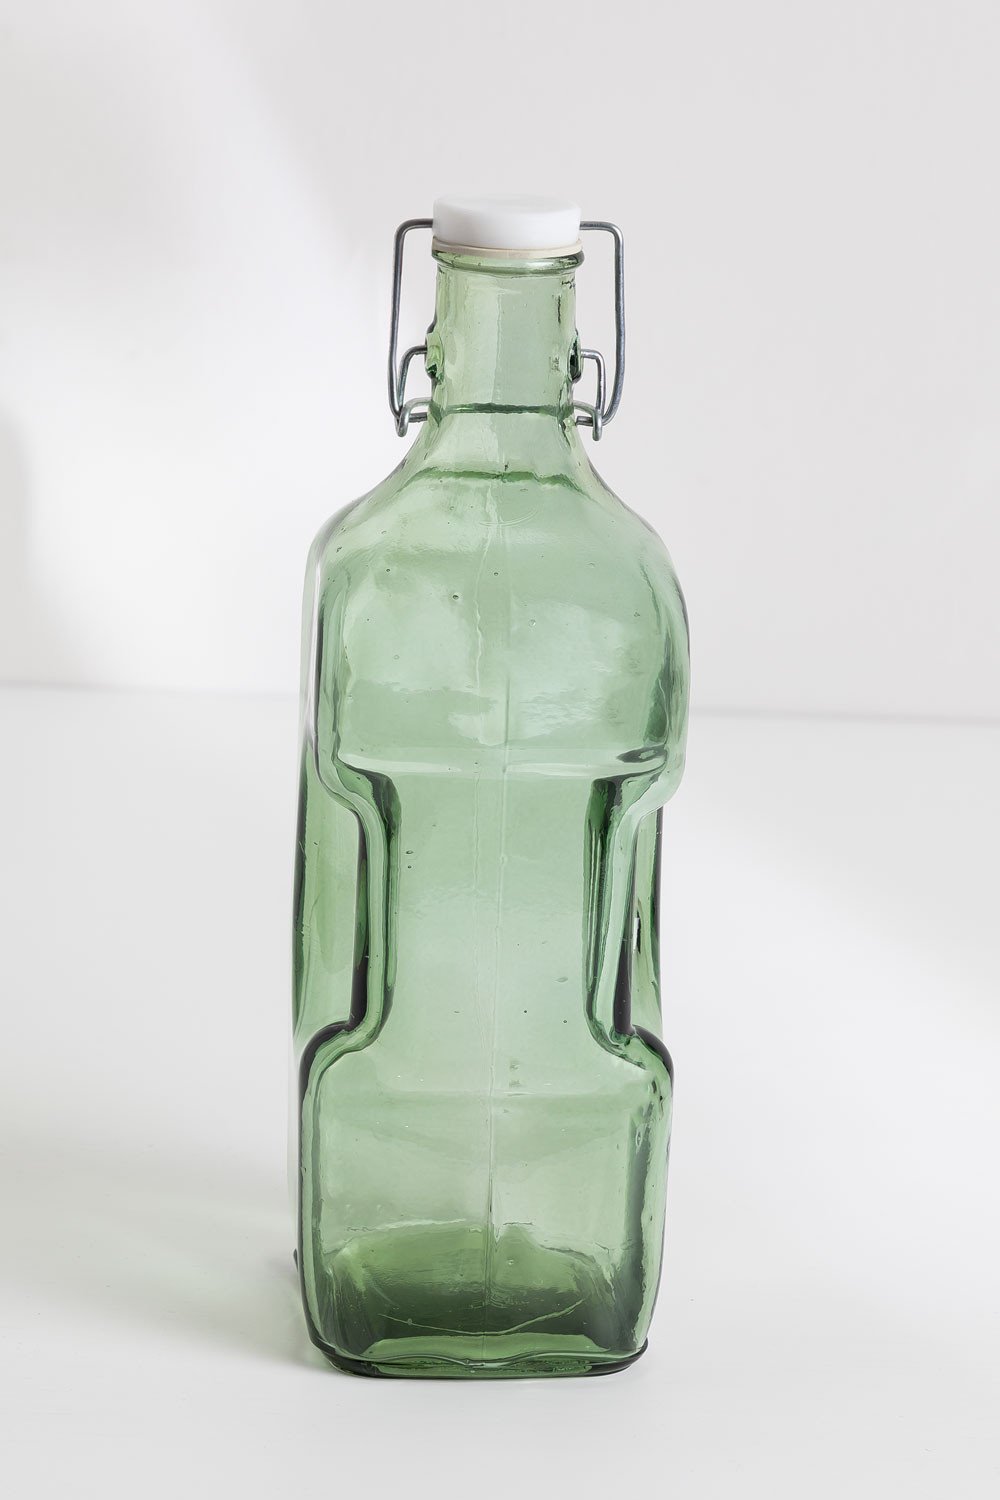 bottiglie 2 litri - Arredamento e Casalinghi In vendita a Treviso